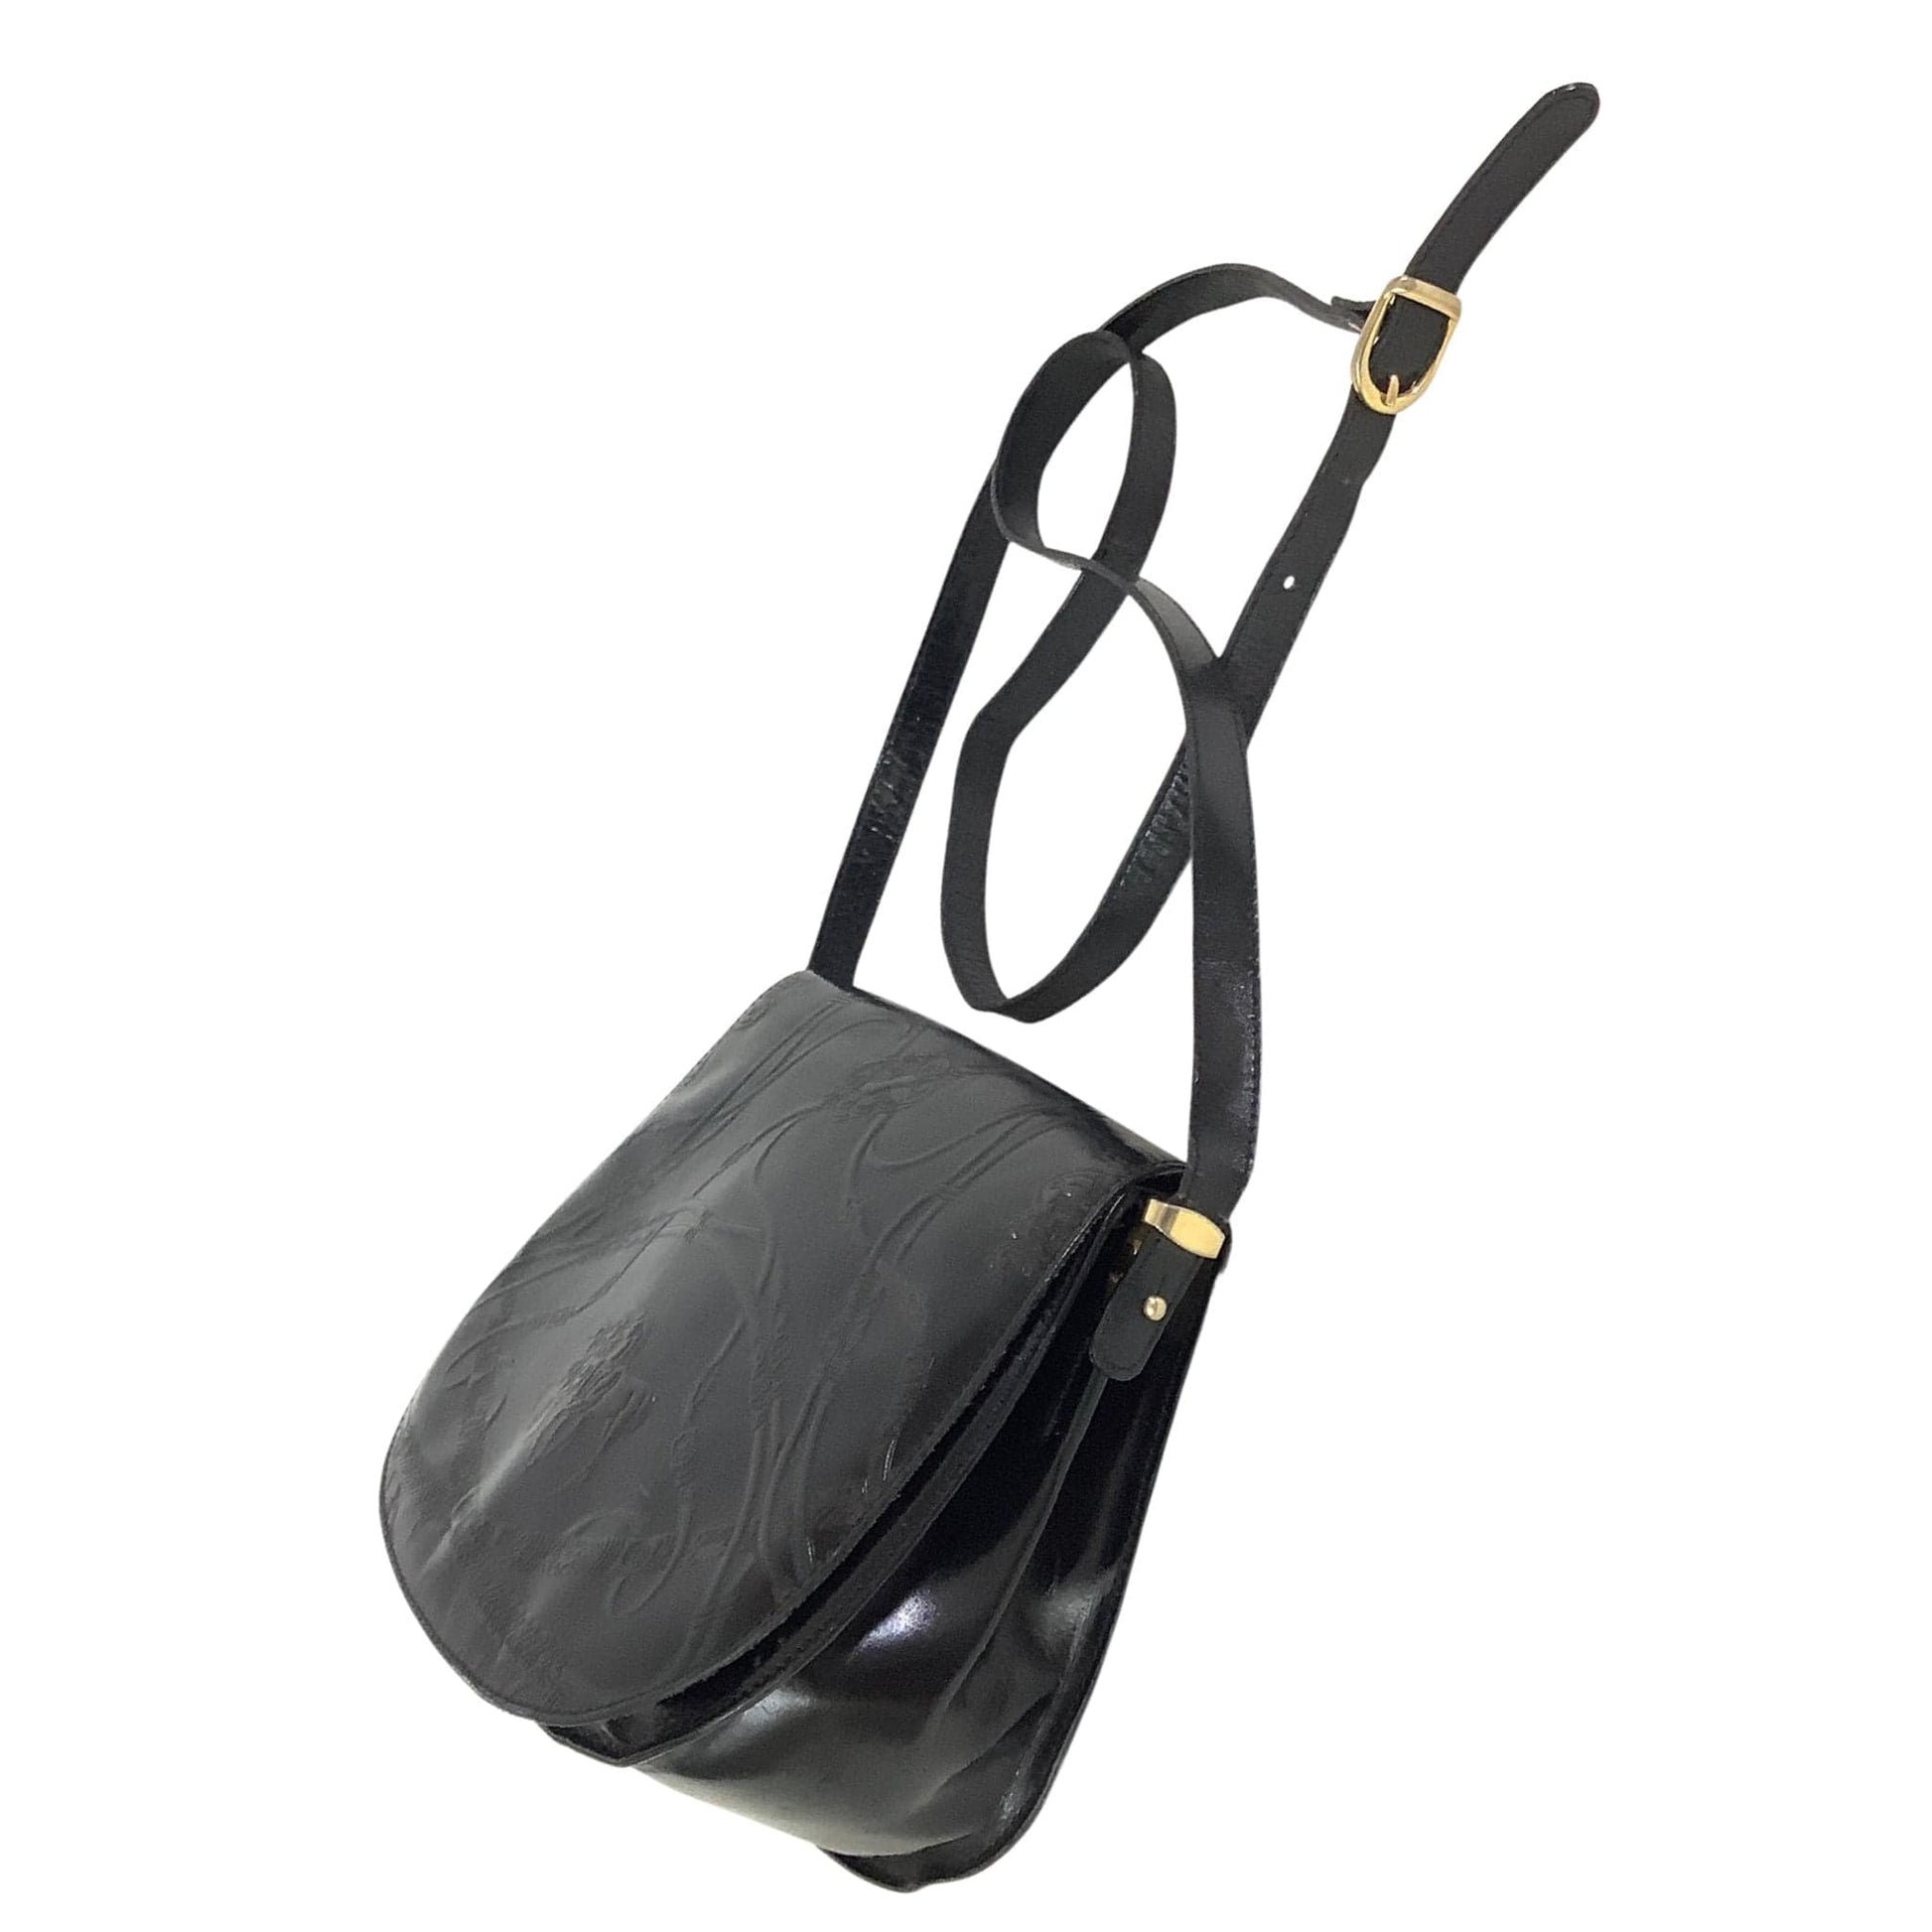 Vintage Equestrian Bag Black / Leather / Vintage 1980s